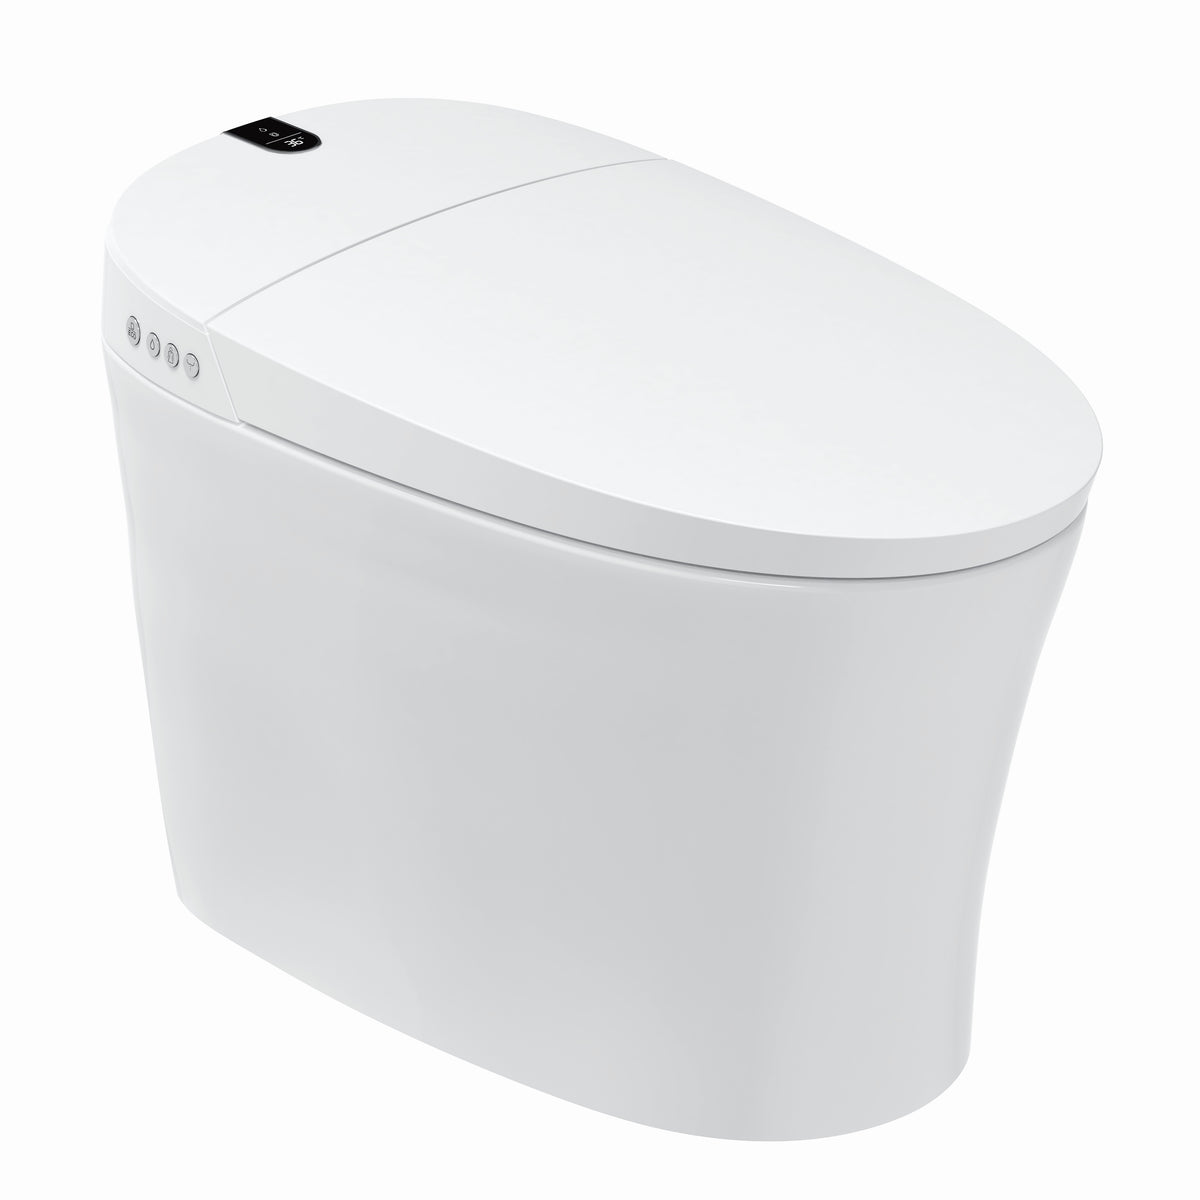 R&T E18 Tankless Smart Bidet Toilet